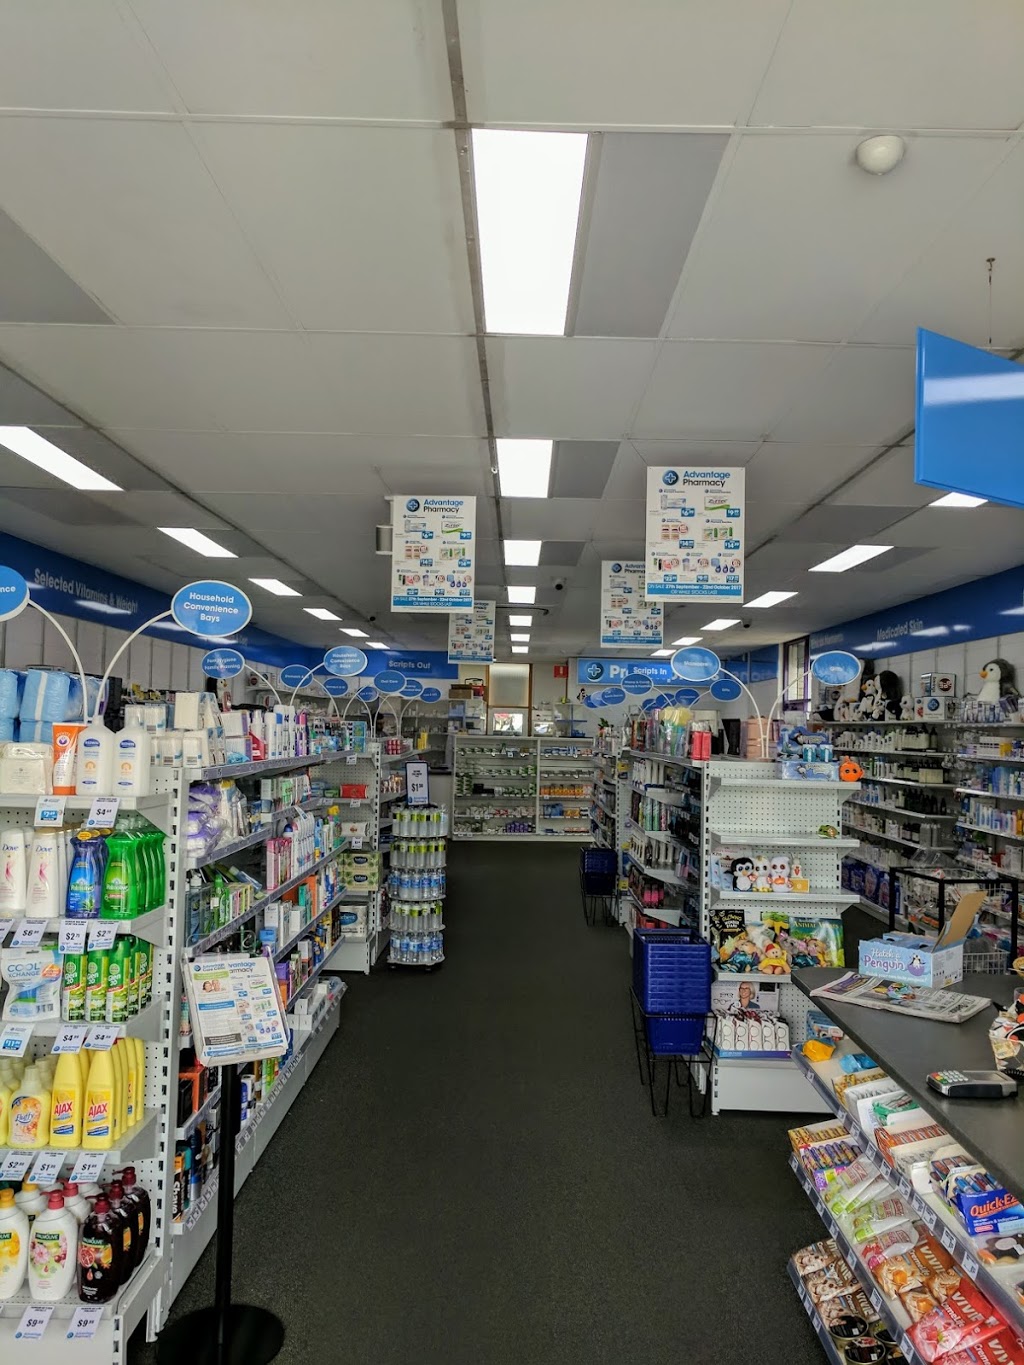 Penguin Pharmacy | pharmacy | 105 Main Rd, Penguin TAS 7316, Australia | 0364372262 OR +61 3 6437 2262